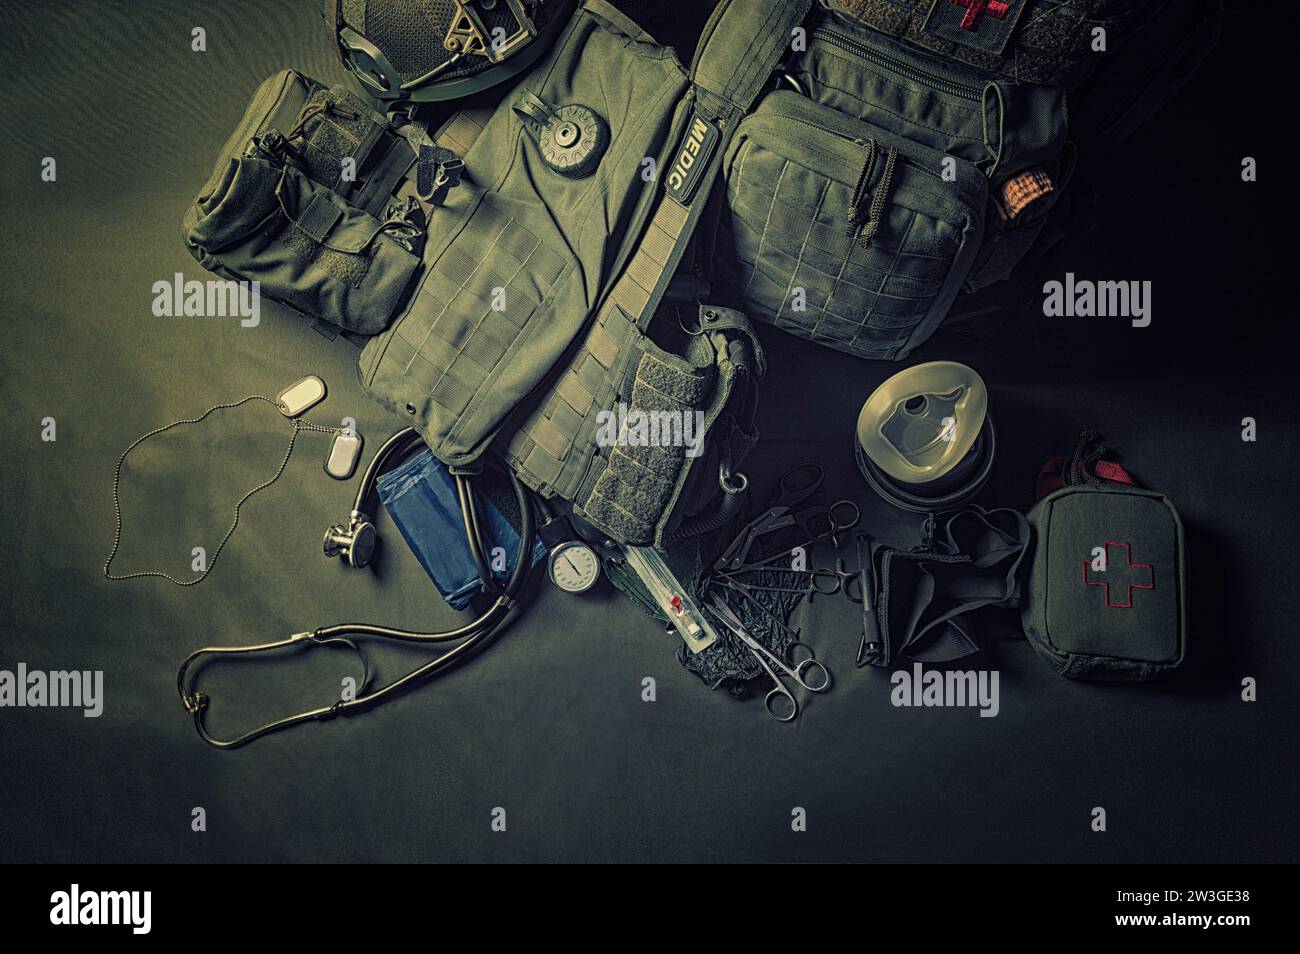 Der Rucksack eines Militärmediziners steht auf grünem Hintergrund. In der Nähe befinden sich ein erste-Hilfe-Kasten und verschiedene Arztwerkzeuge. Blick von oben. Gemischte Medien Stockfoto